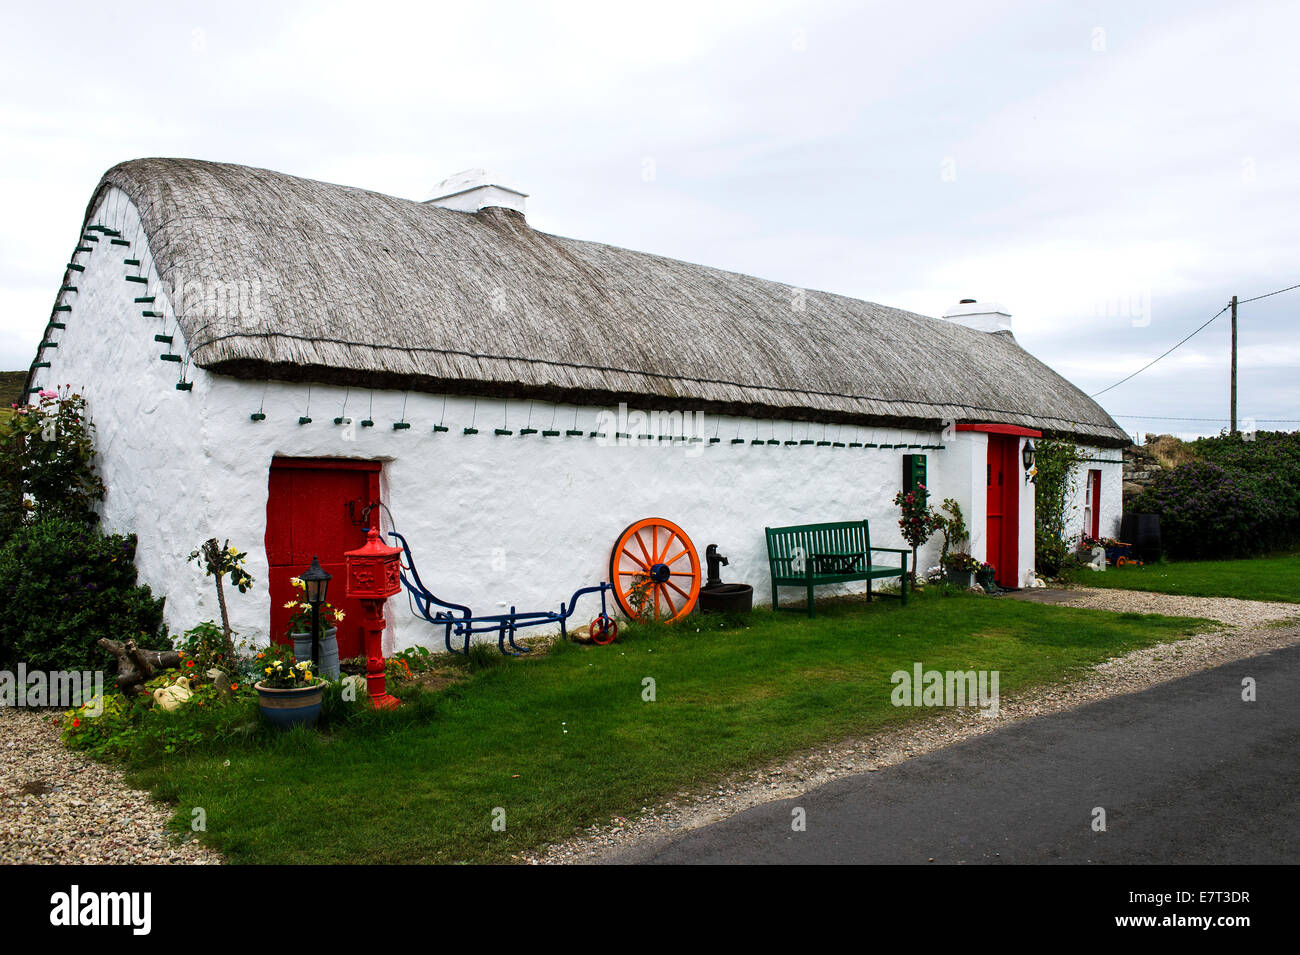 Irlandais traditionnel du 19ème siècle, un toit de chaume cottage, Malin Head, comté de Donegal, Irlande. Banque D'Images